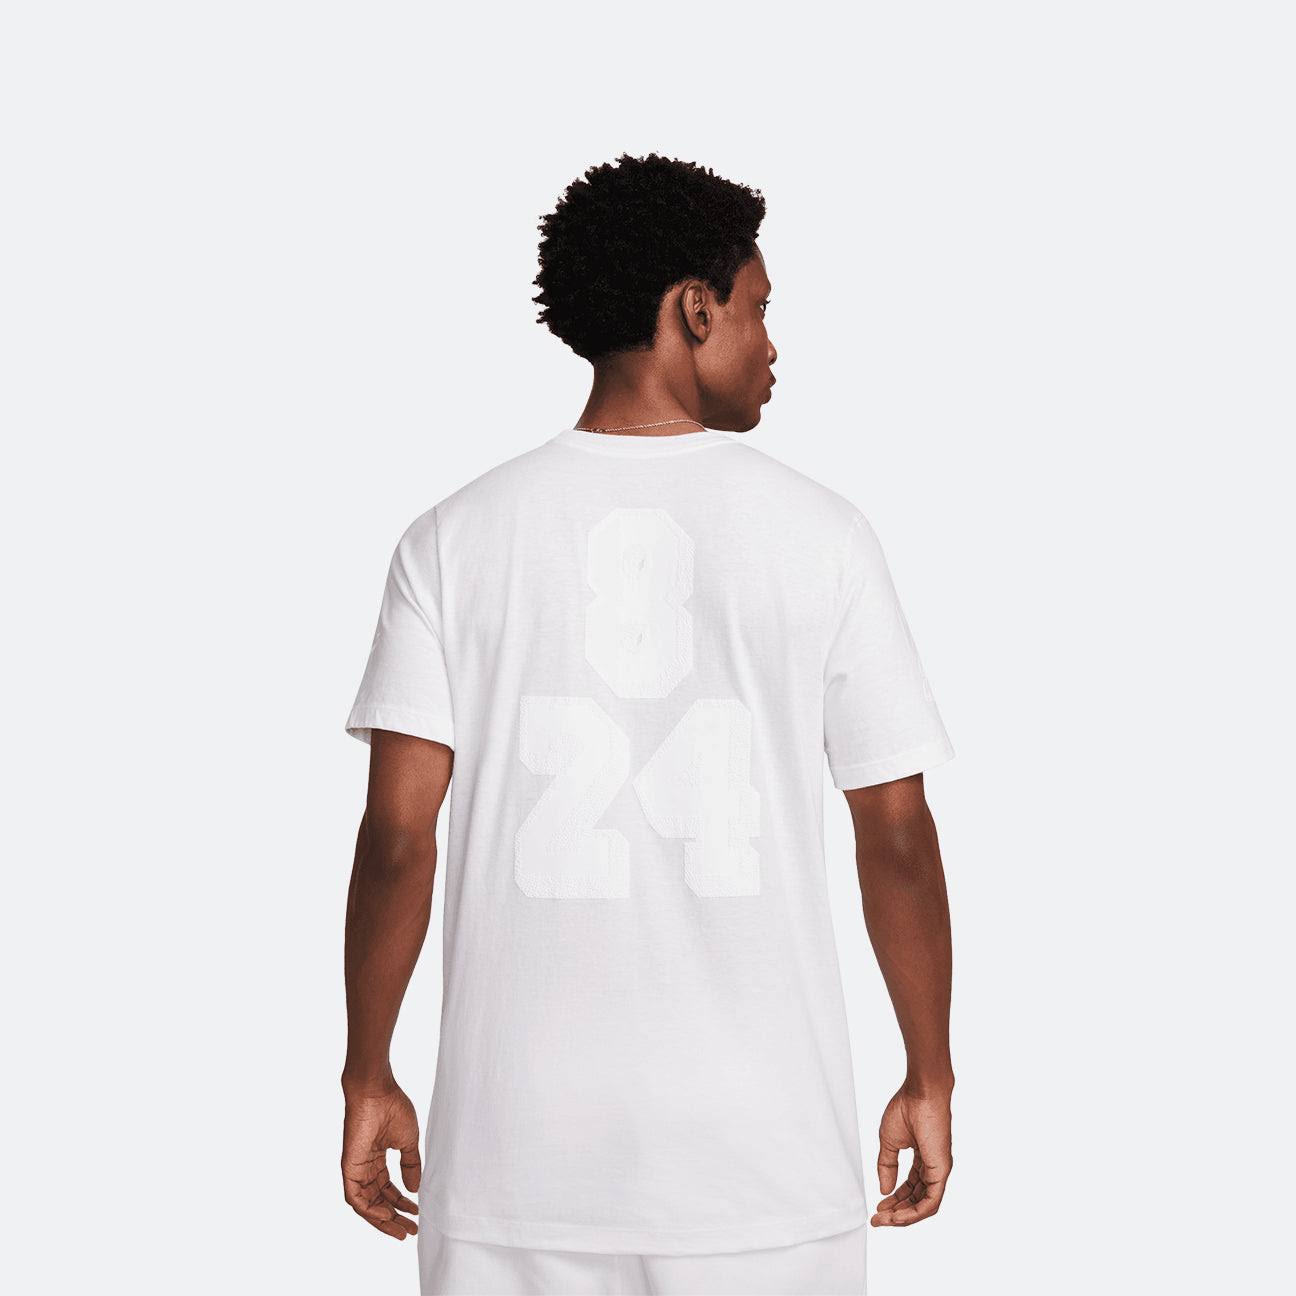 Kobe Mamba Halo Men's T-Shirt Size: XXL